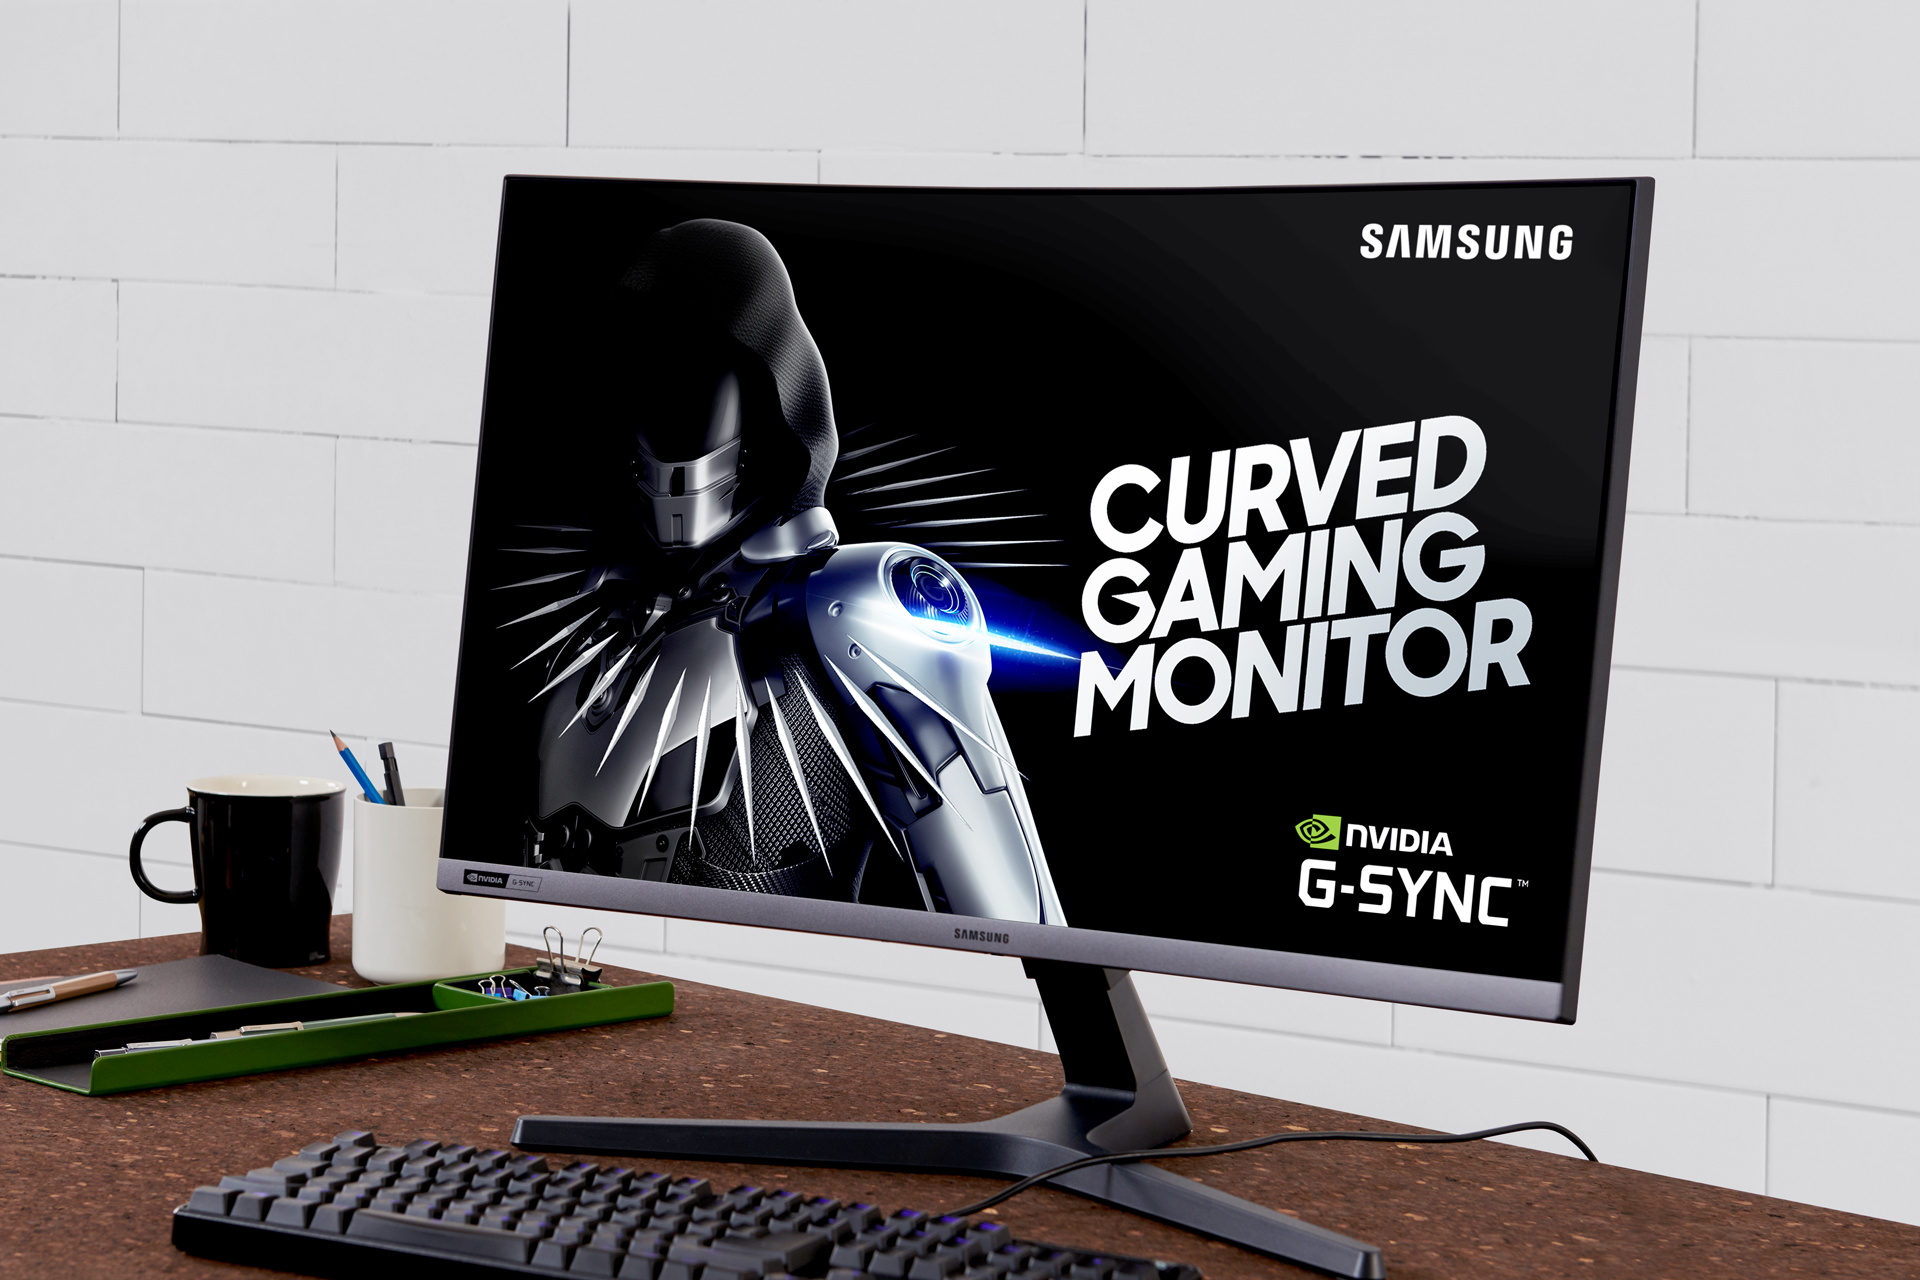 &سامسونج إلكترونيكس& تطلق شاشة الألعاب المنحنية CRG5 بتقنية G-Sync وبمعدل تحديث فائق يبلغ 240 هيرتز